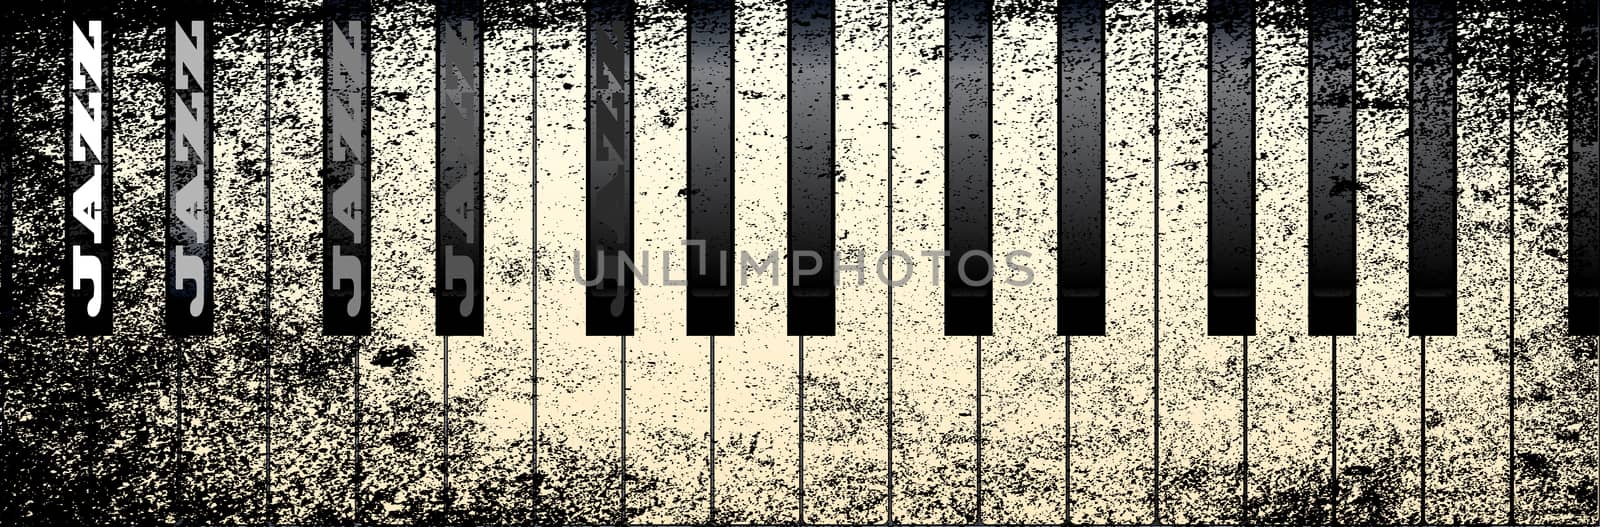 Jazz Piano by Bigalbaloo